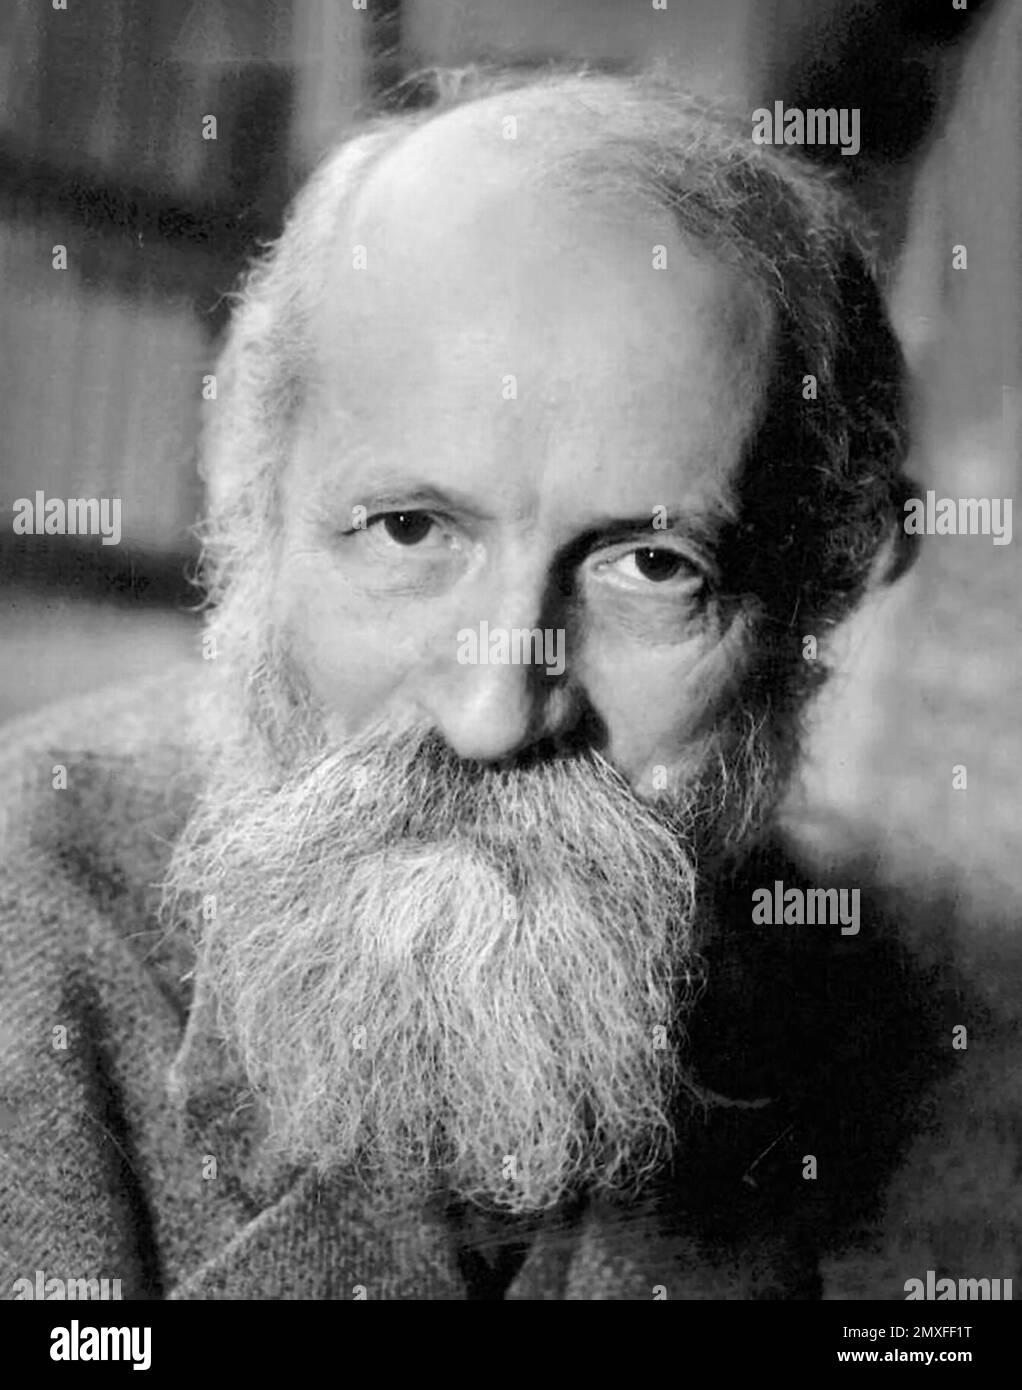 Martin Buber. Ritratto del filosofo ebraico austriaco, Martin Buber (1878-1965), 1940-50 Foto Stock